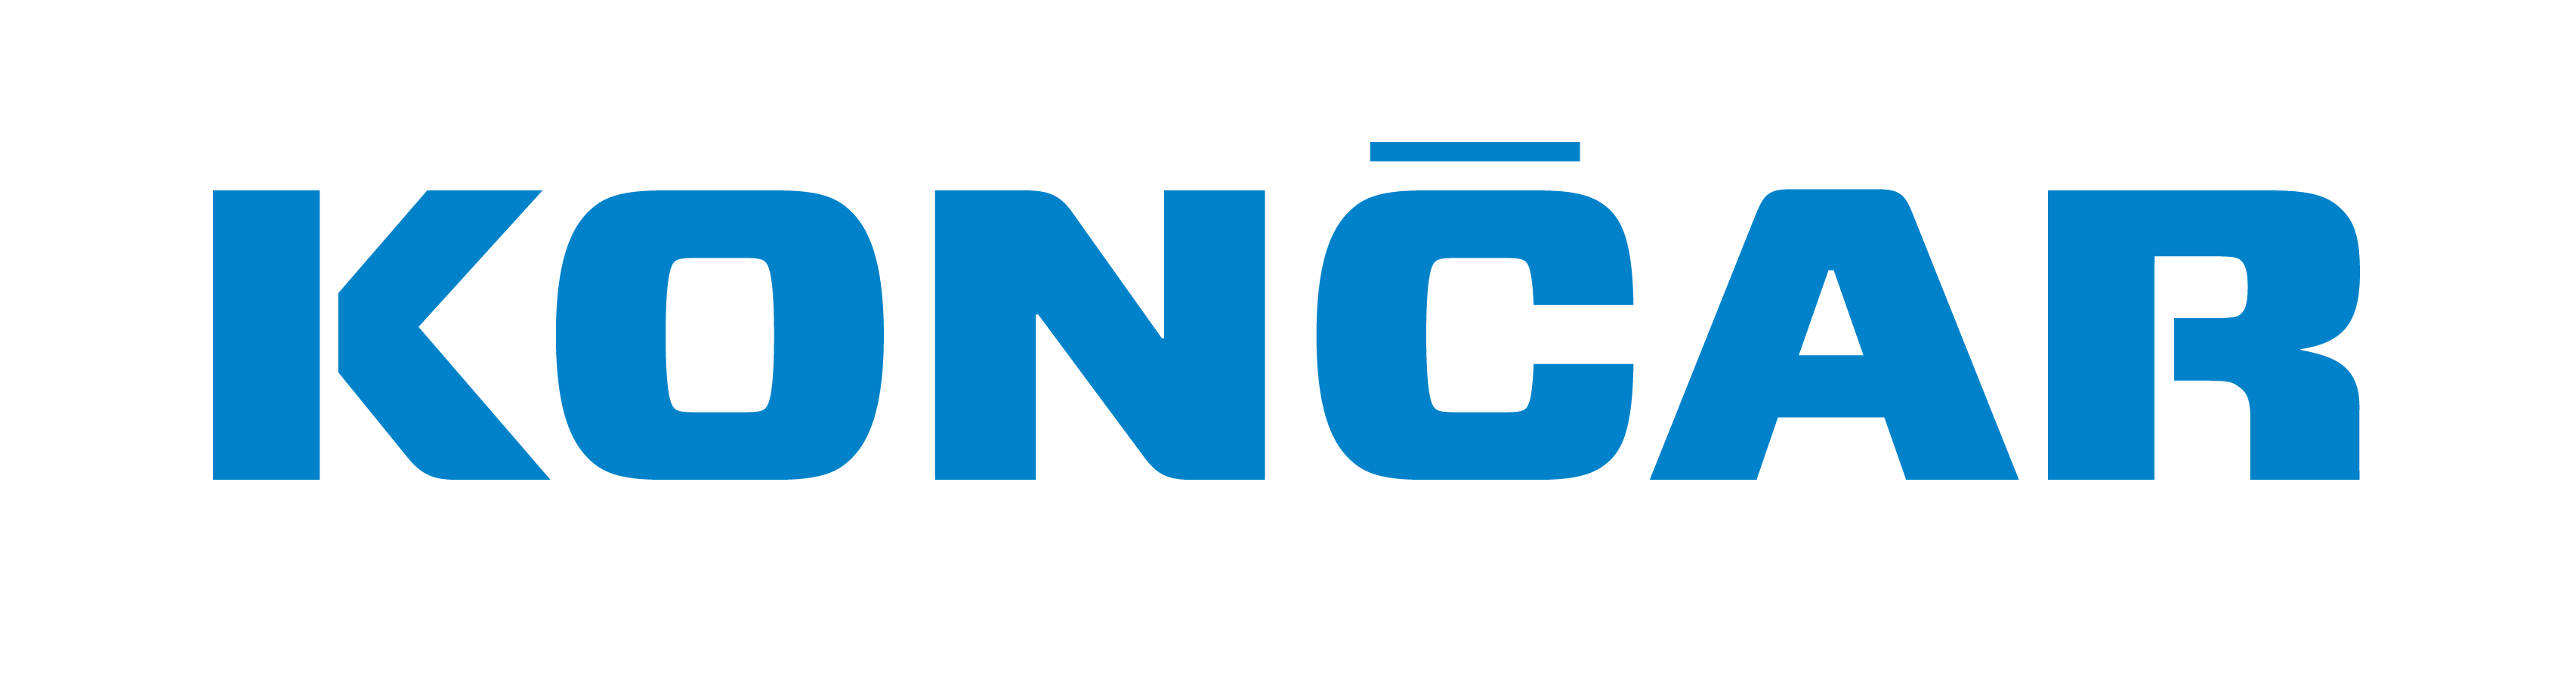 KONCAR_logo